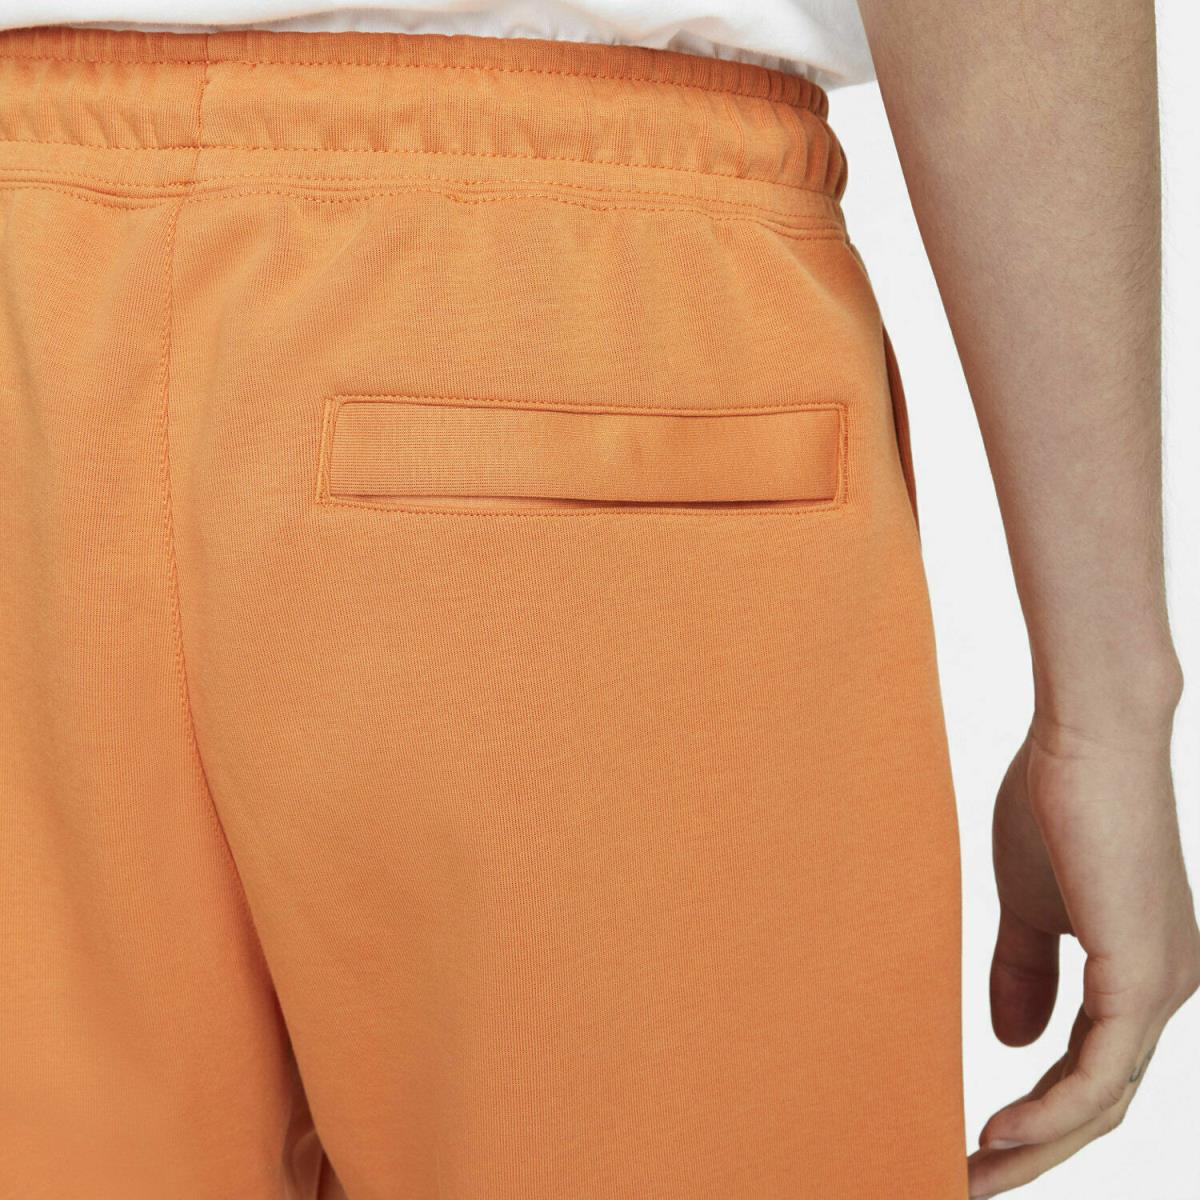 Nike clothing  - Orange 2